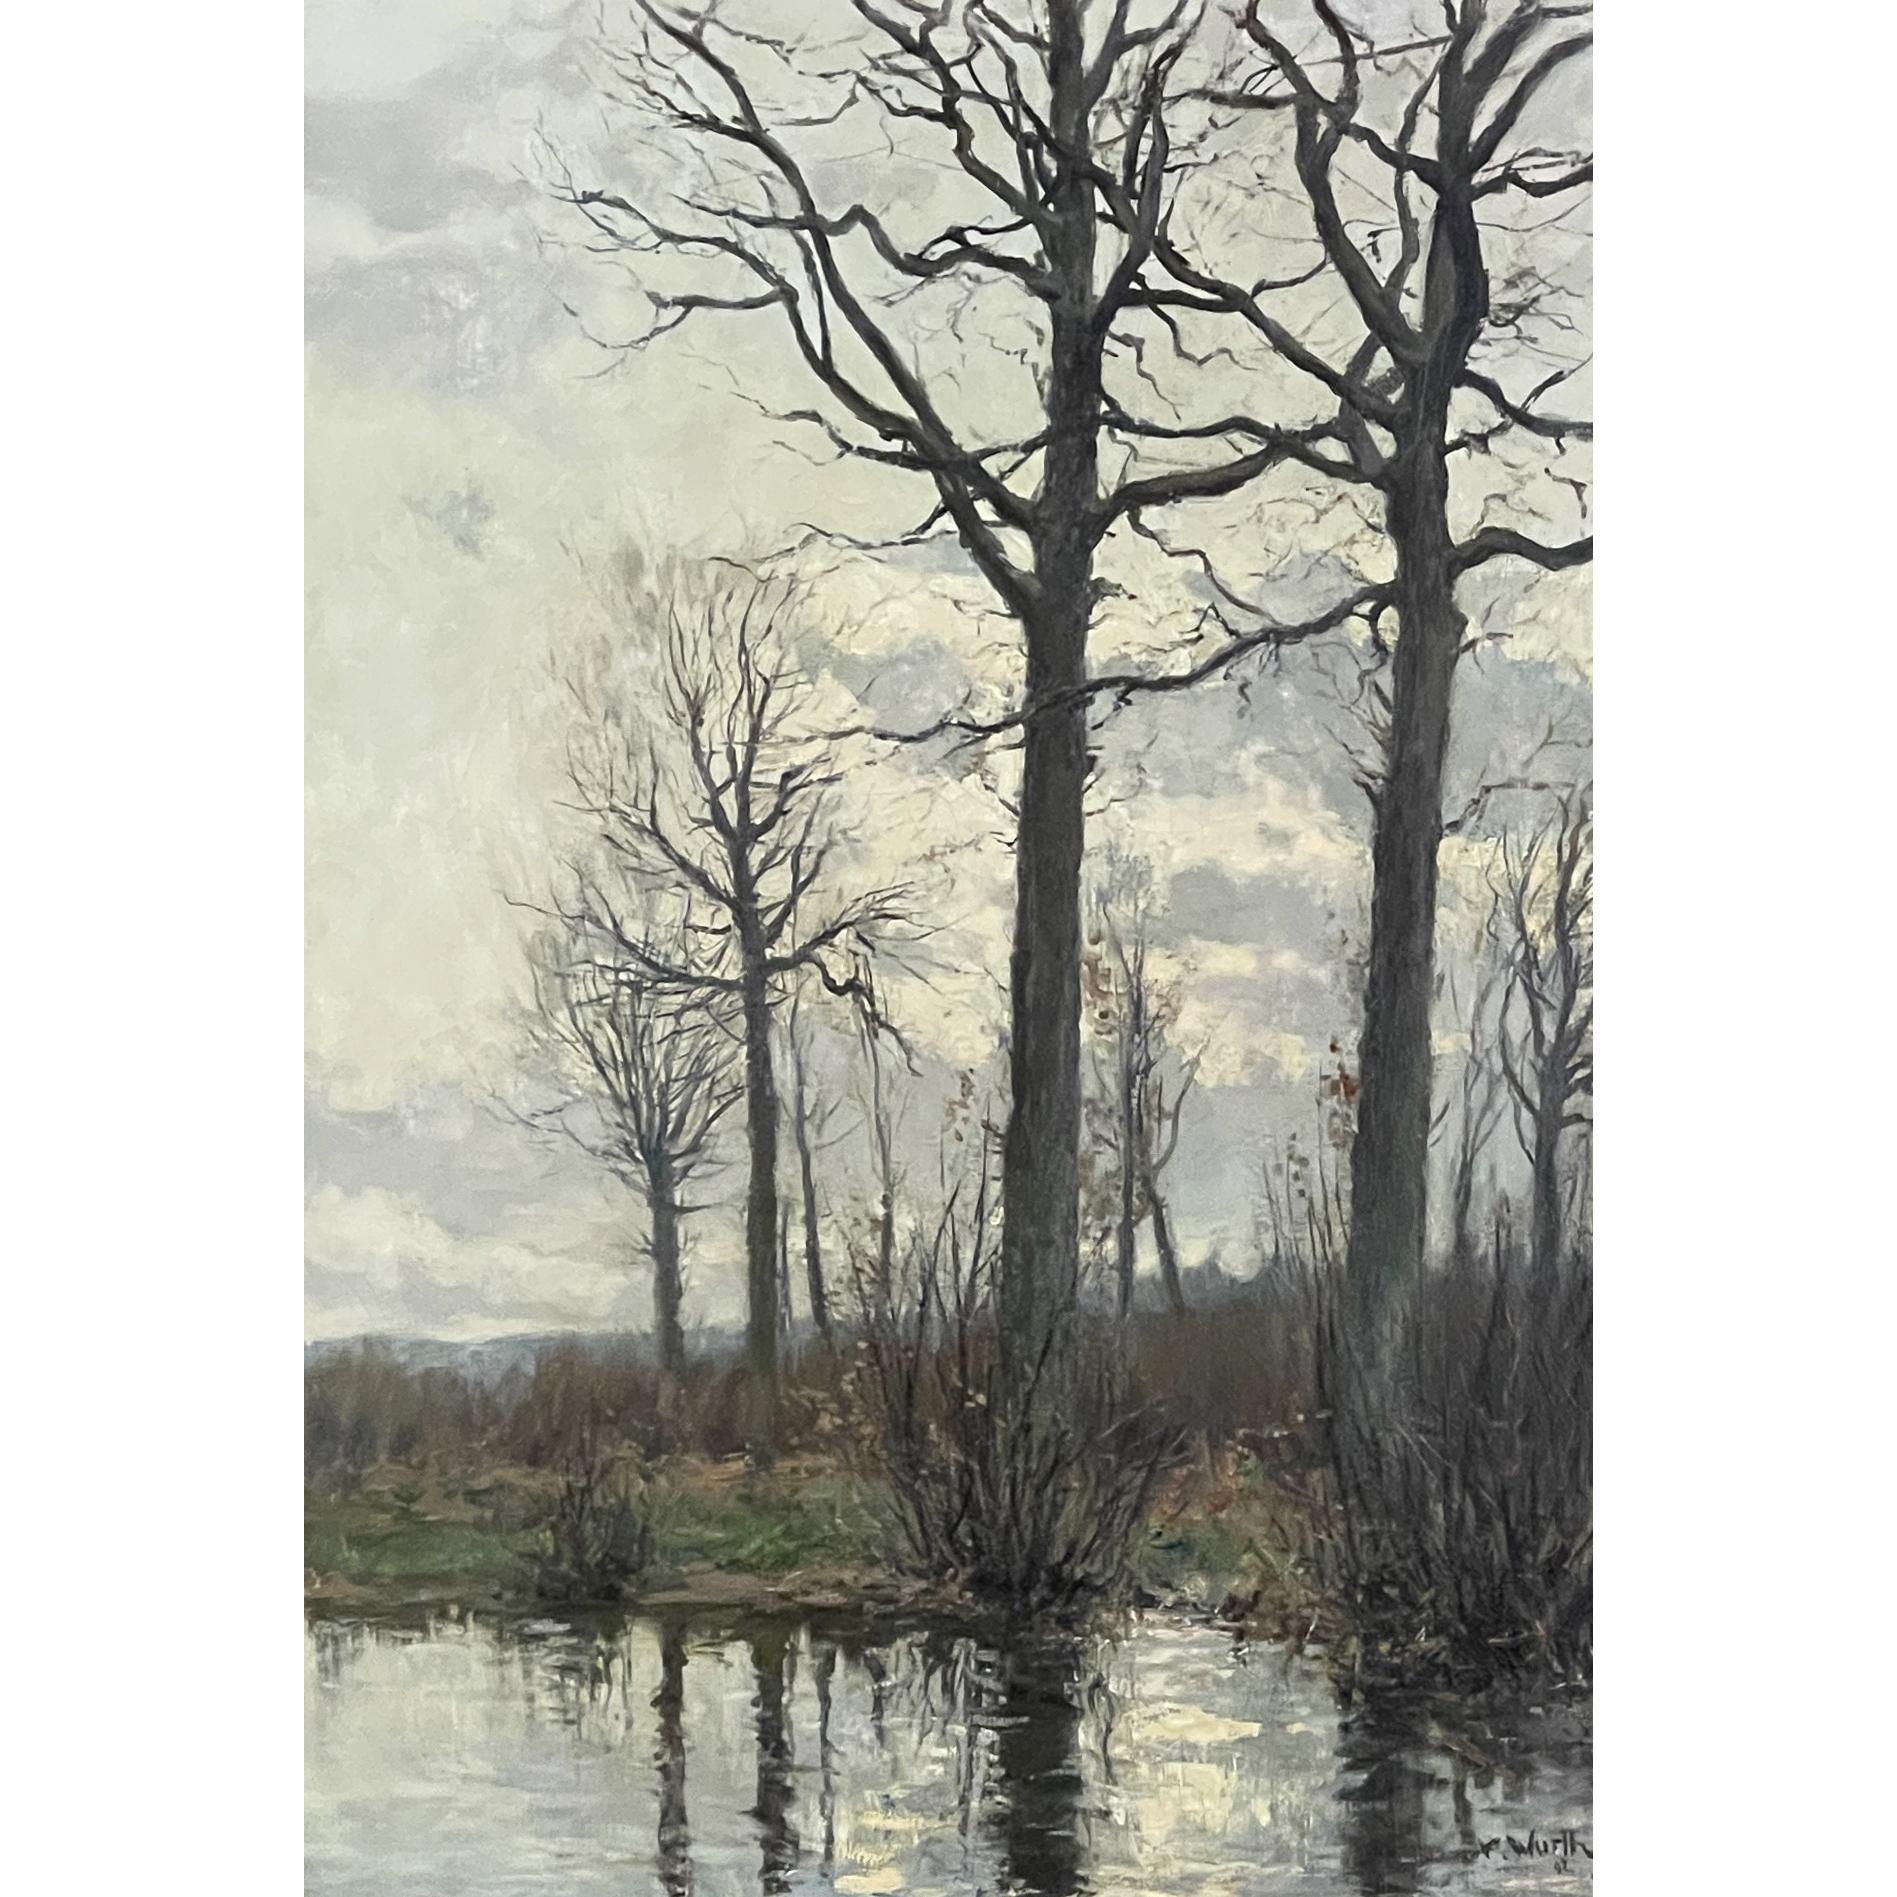 19ème siècle Huile sur toile encadrée de Xavier Wurth (1869-1933) est un exemple inhabituel de l'œuvre de l'artiste, étant un paysage orienté verticalement d'une scène pastorale de plaine. L'eau de la composition occupe toute la partie inférieure de